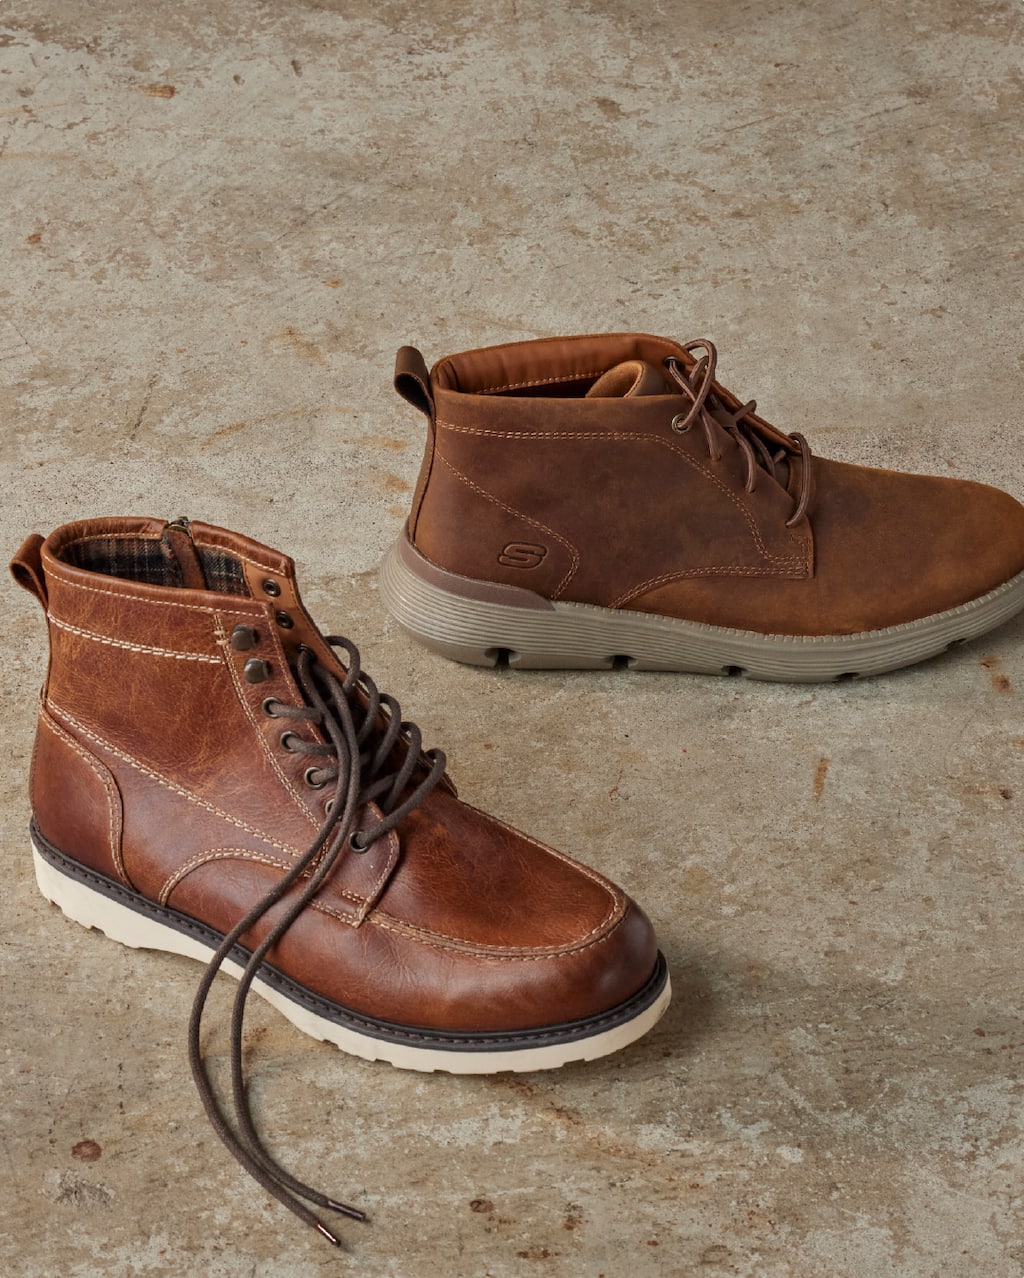 Dsw Men Work Boots Cheap Sale | bellvalefarms.com